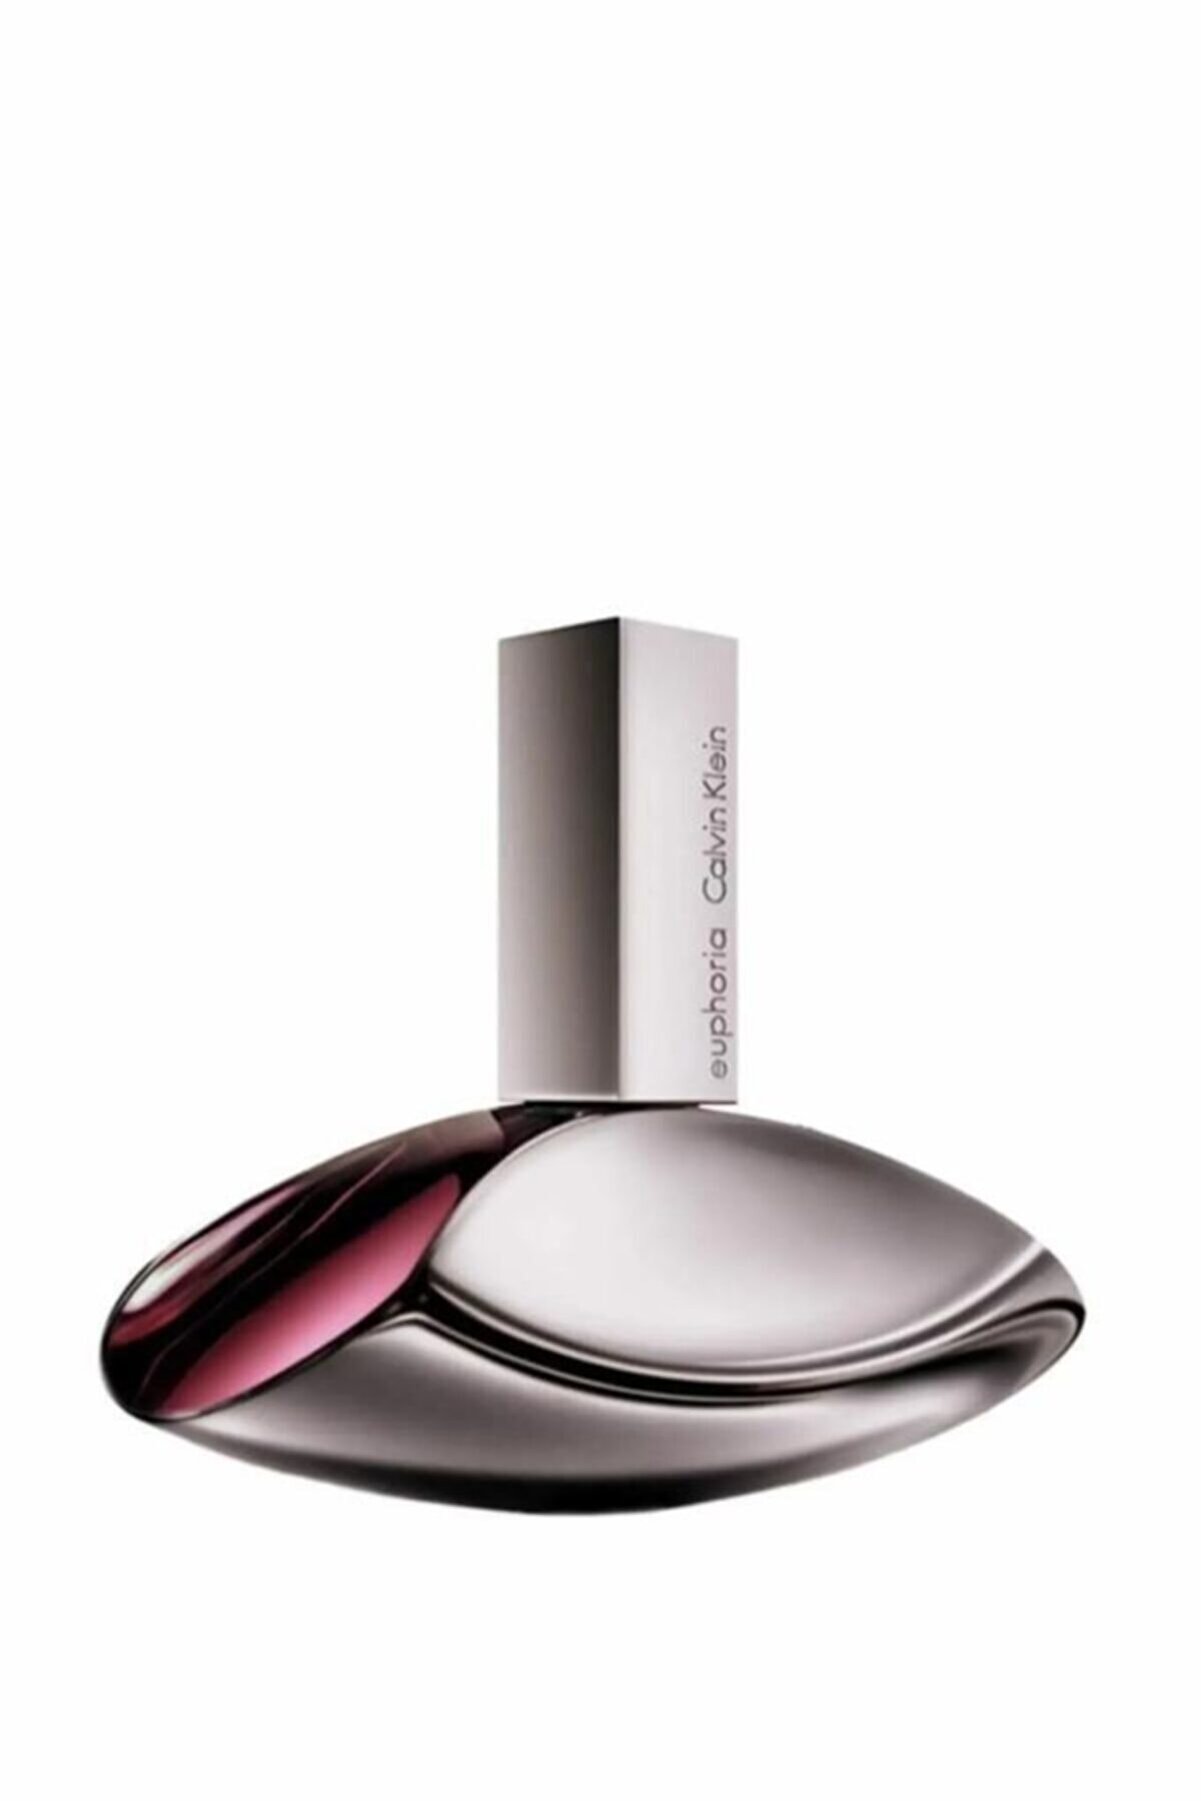 Calvin Klein Euphoria Edp 100 ml Kadın Parfüm 0088300162512